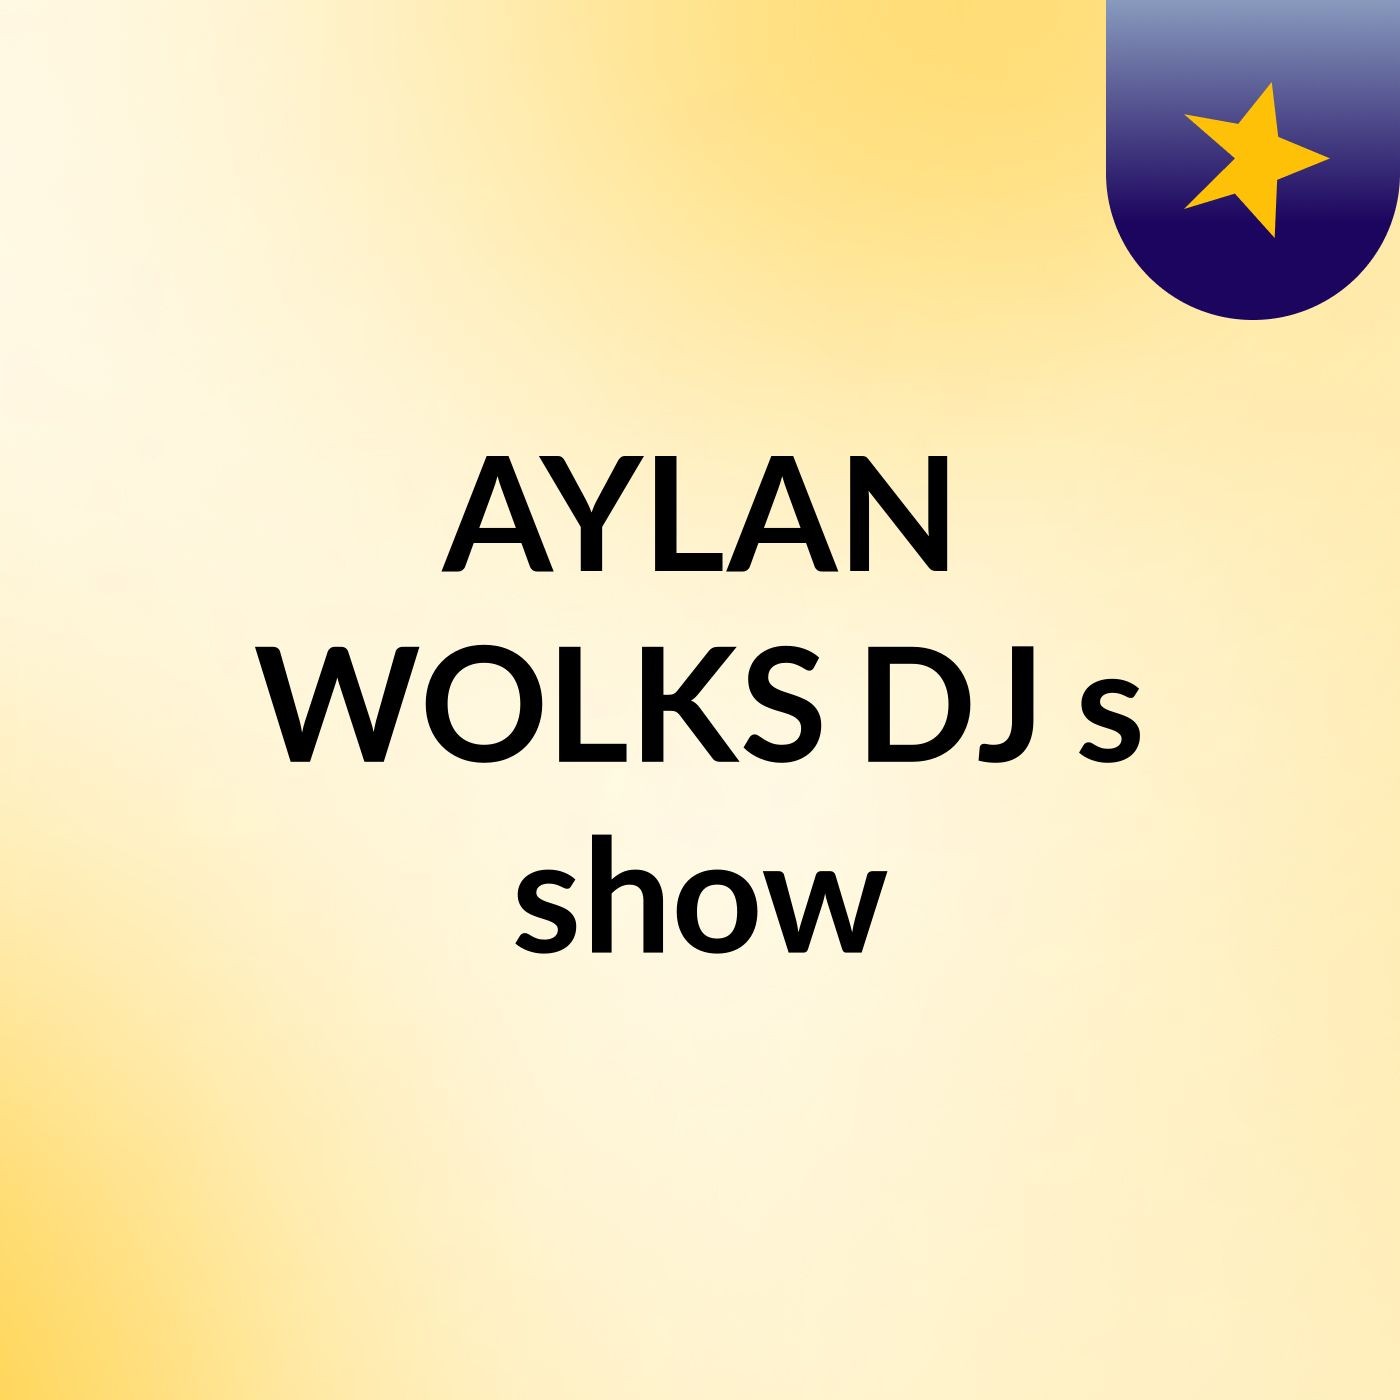 AYLAN WOLKS DJ's show